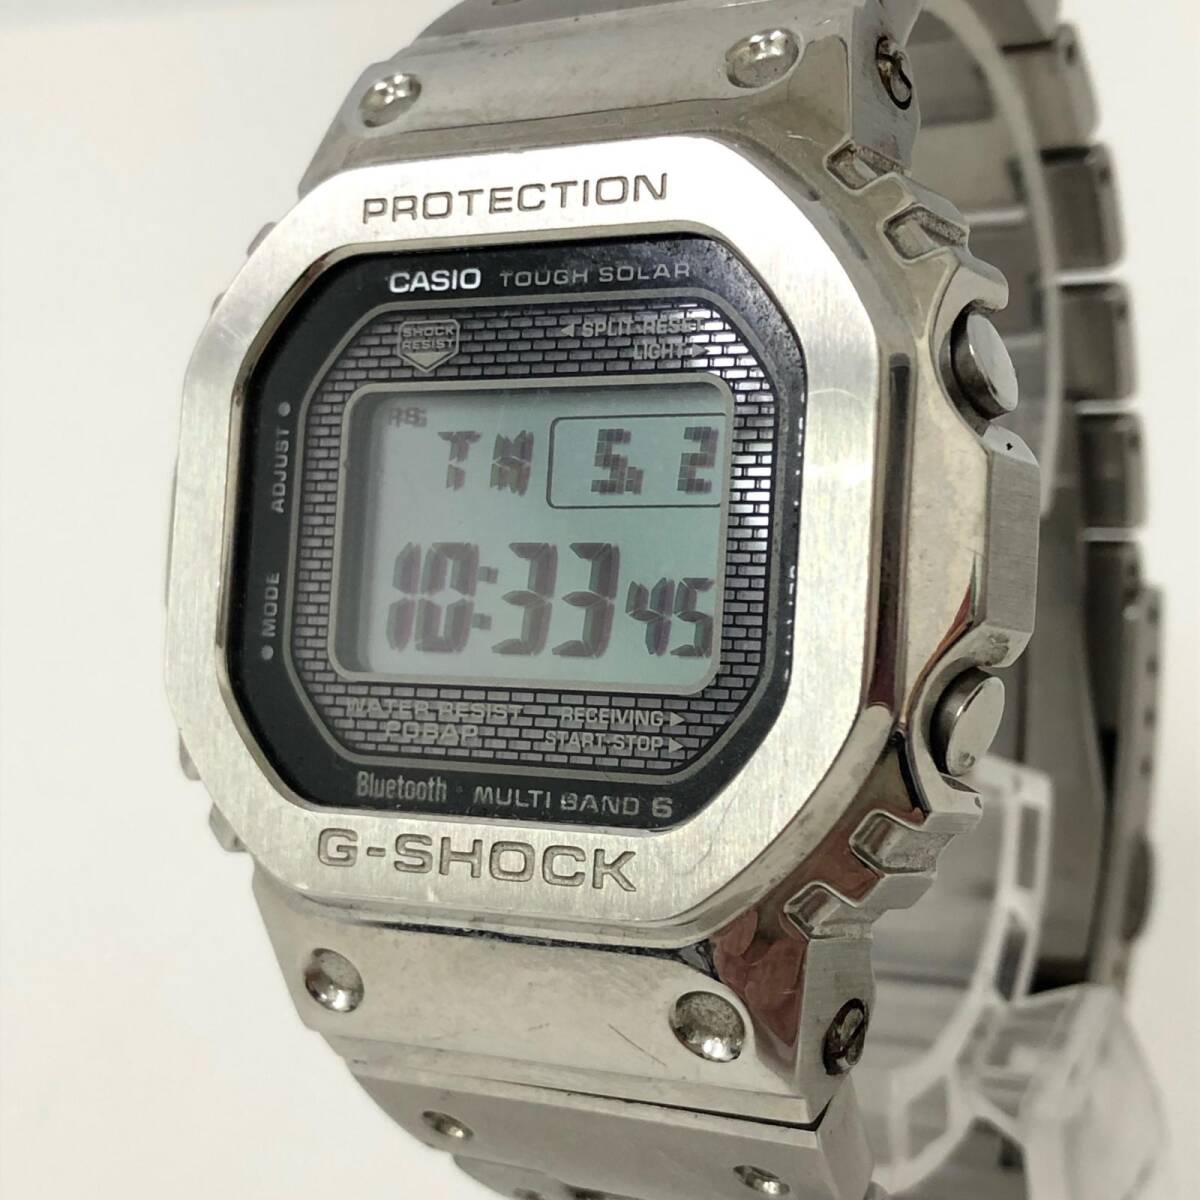 カシオ G-SHOCK 腕時計 GMW-B5000D-1JF 電波受信 電波ソーラー マルチバンド6 Bluetooth搭載 メタルバンド シルバーカラー 稼働品_画像4